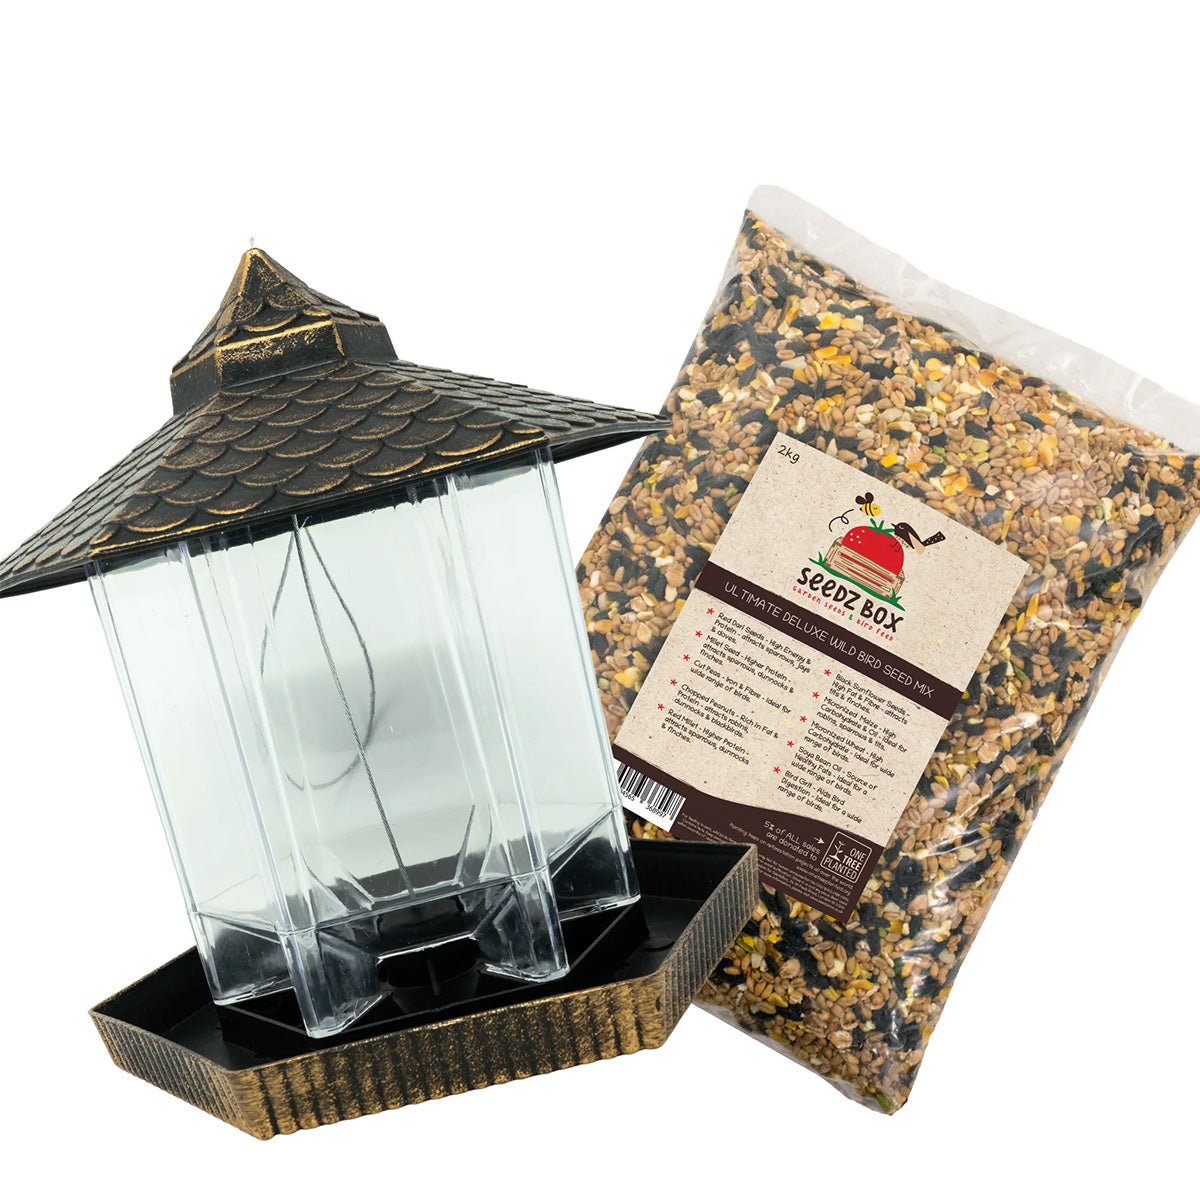 Deluxe Gazebo bird feeder & Ultimate bird food - Seedzbox5060910341544